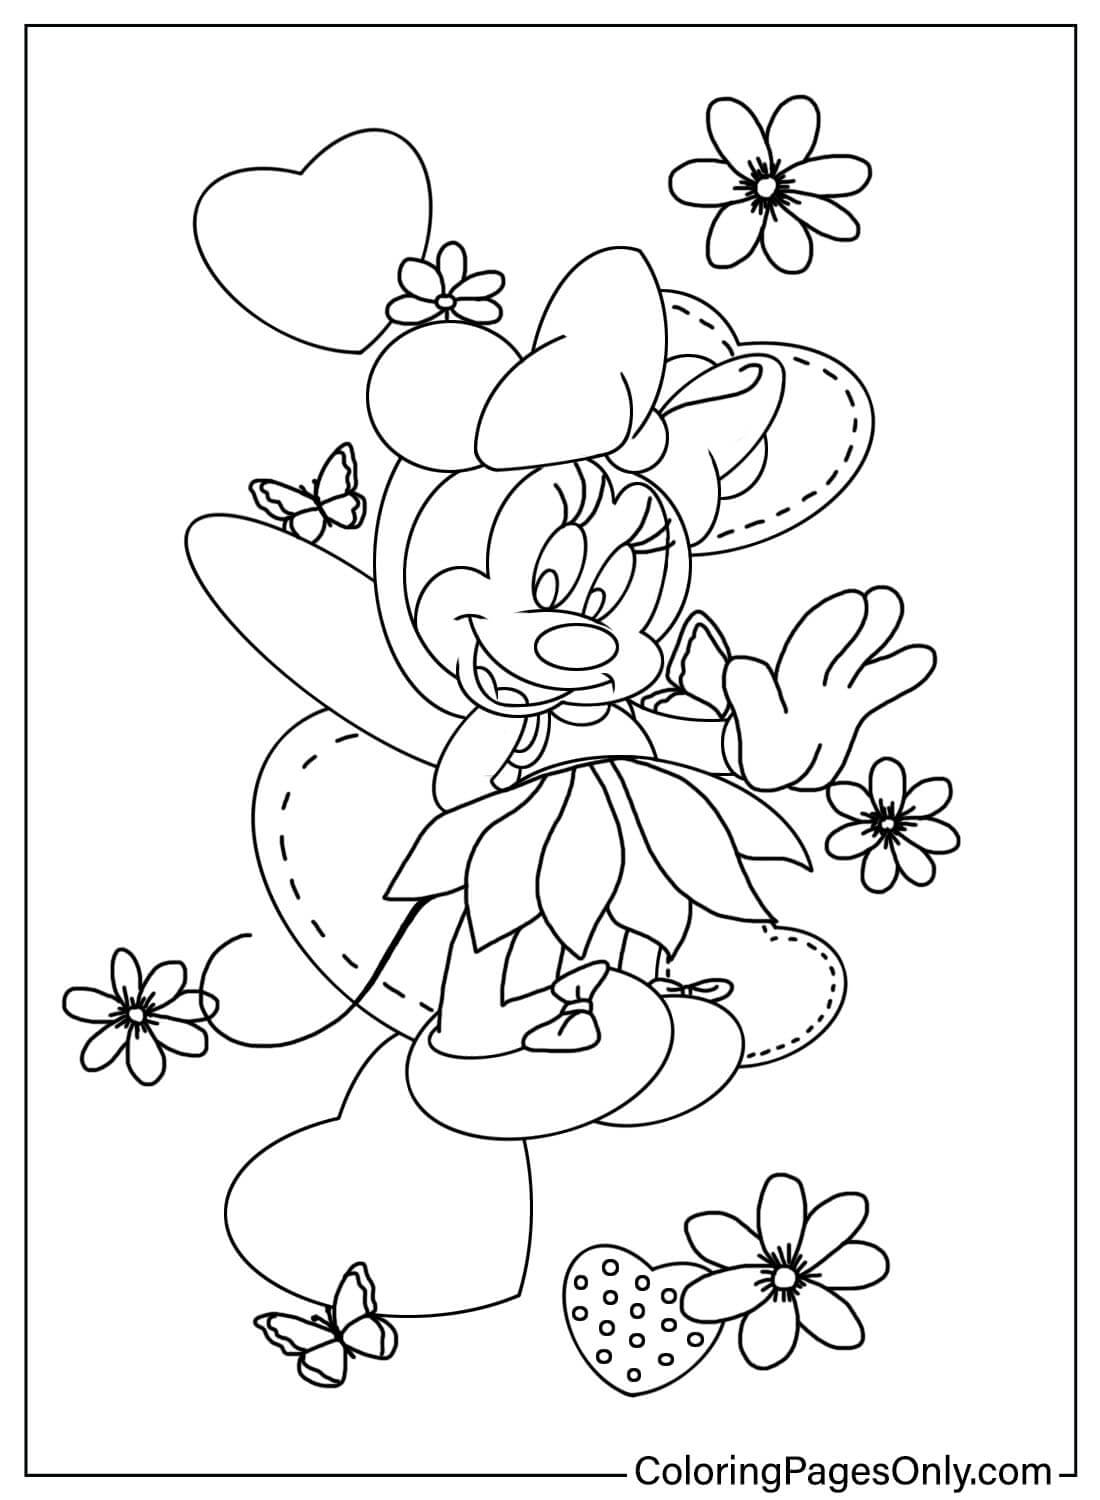 Mooie Minnie Mouse kleurplaat van Minnie Mouse